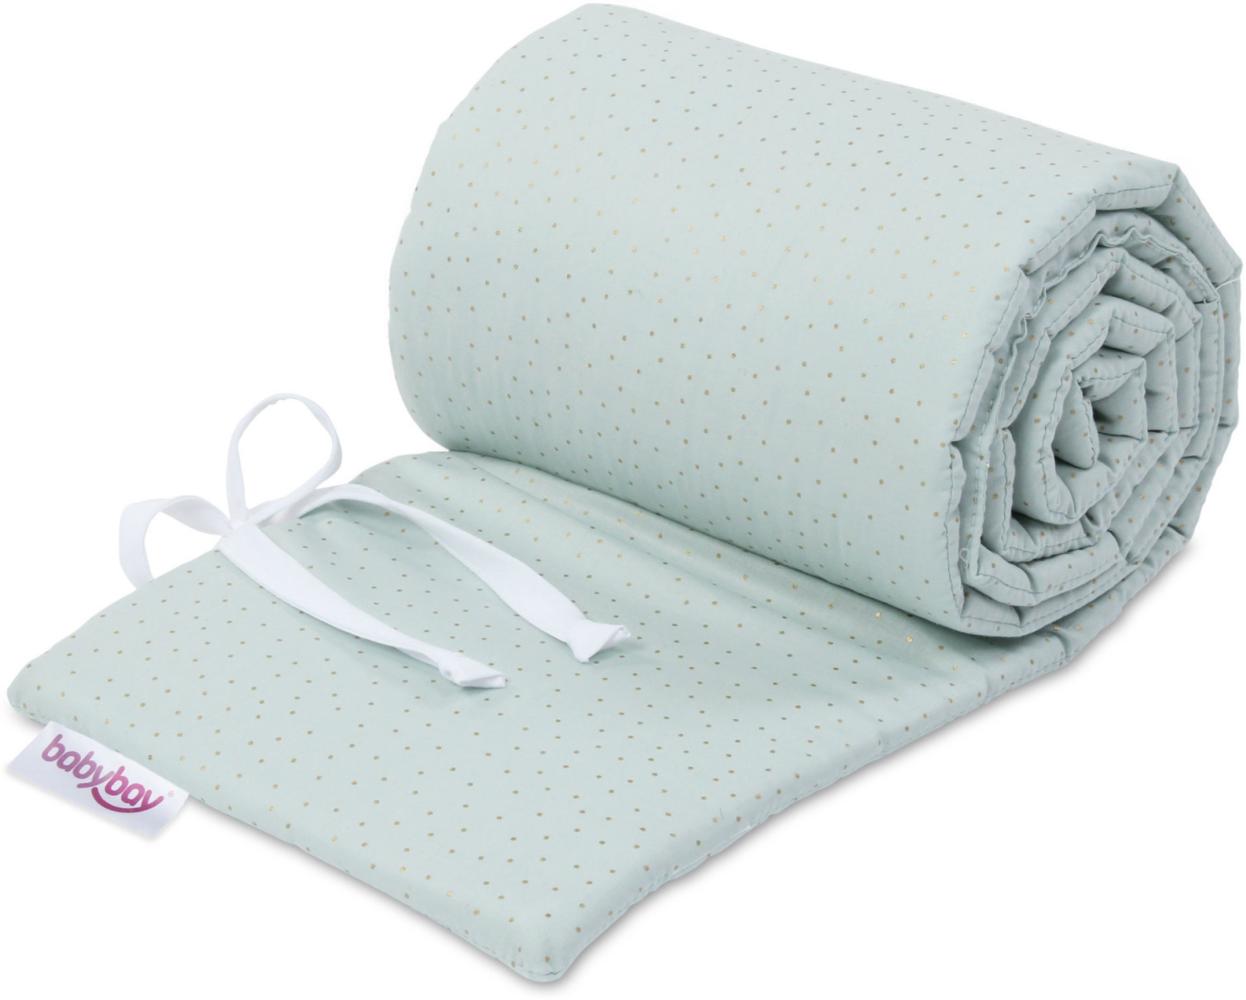 babybay Nestchen Organic Cotton Royal passend für Modell Maxi, Boxspring, Comfort und Comfort Plus, Bild 1